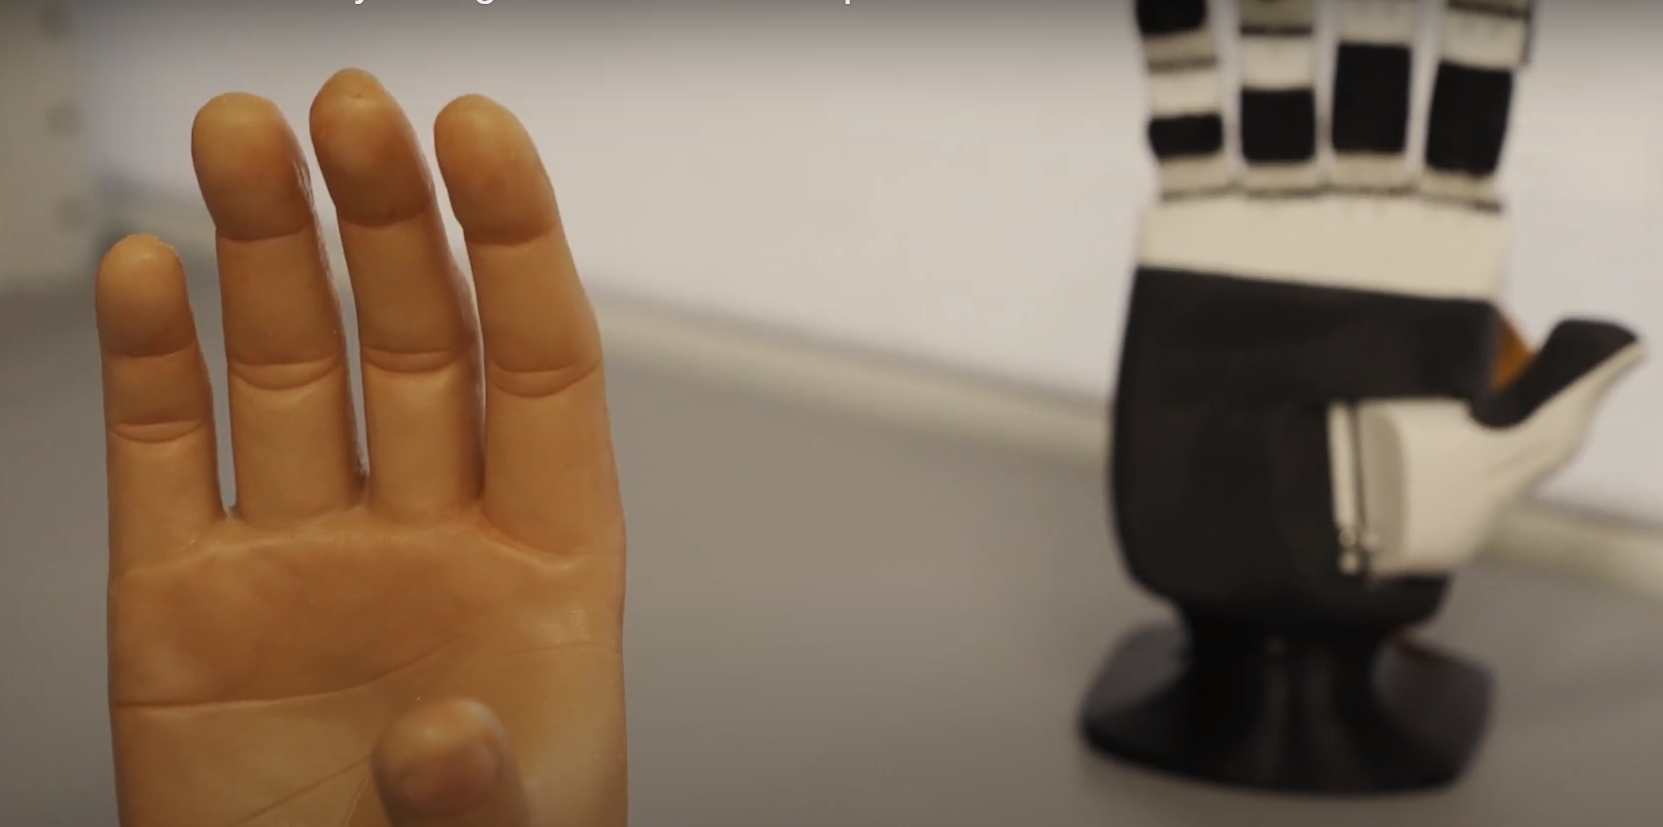 VIDEO. Piele artificială capabilă să simtă, creată de un grup de cercetători inspirați de Star Wars